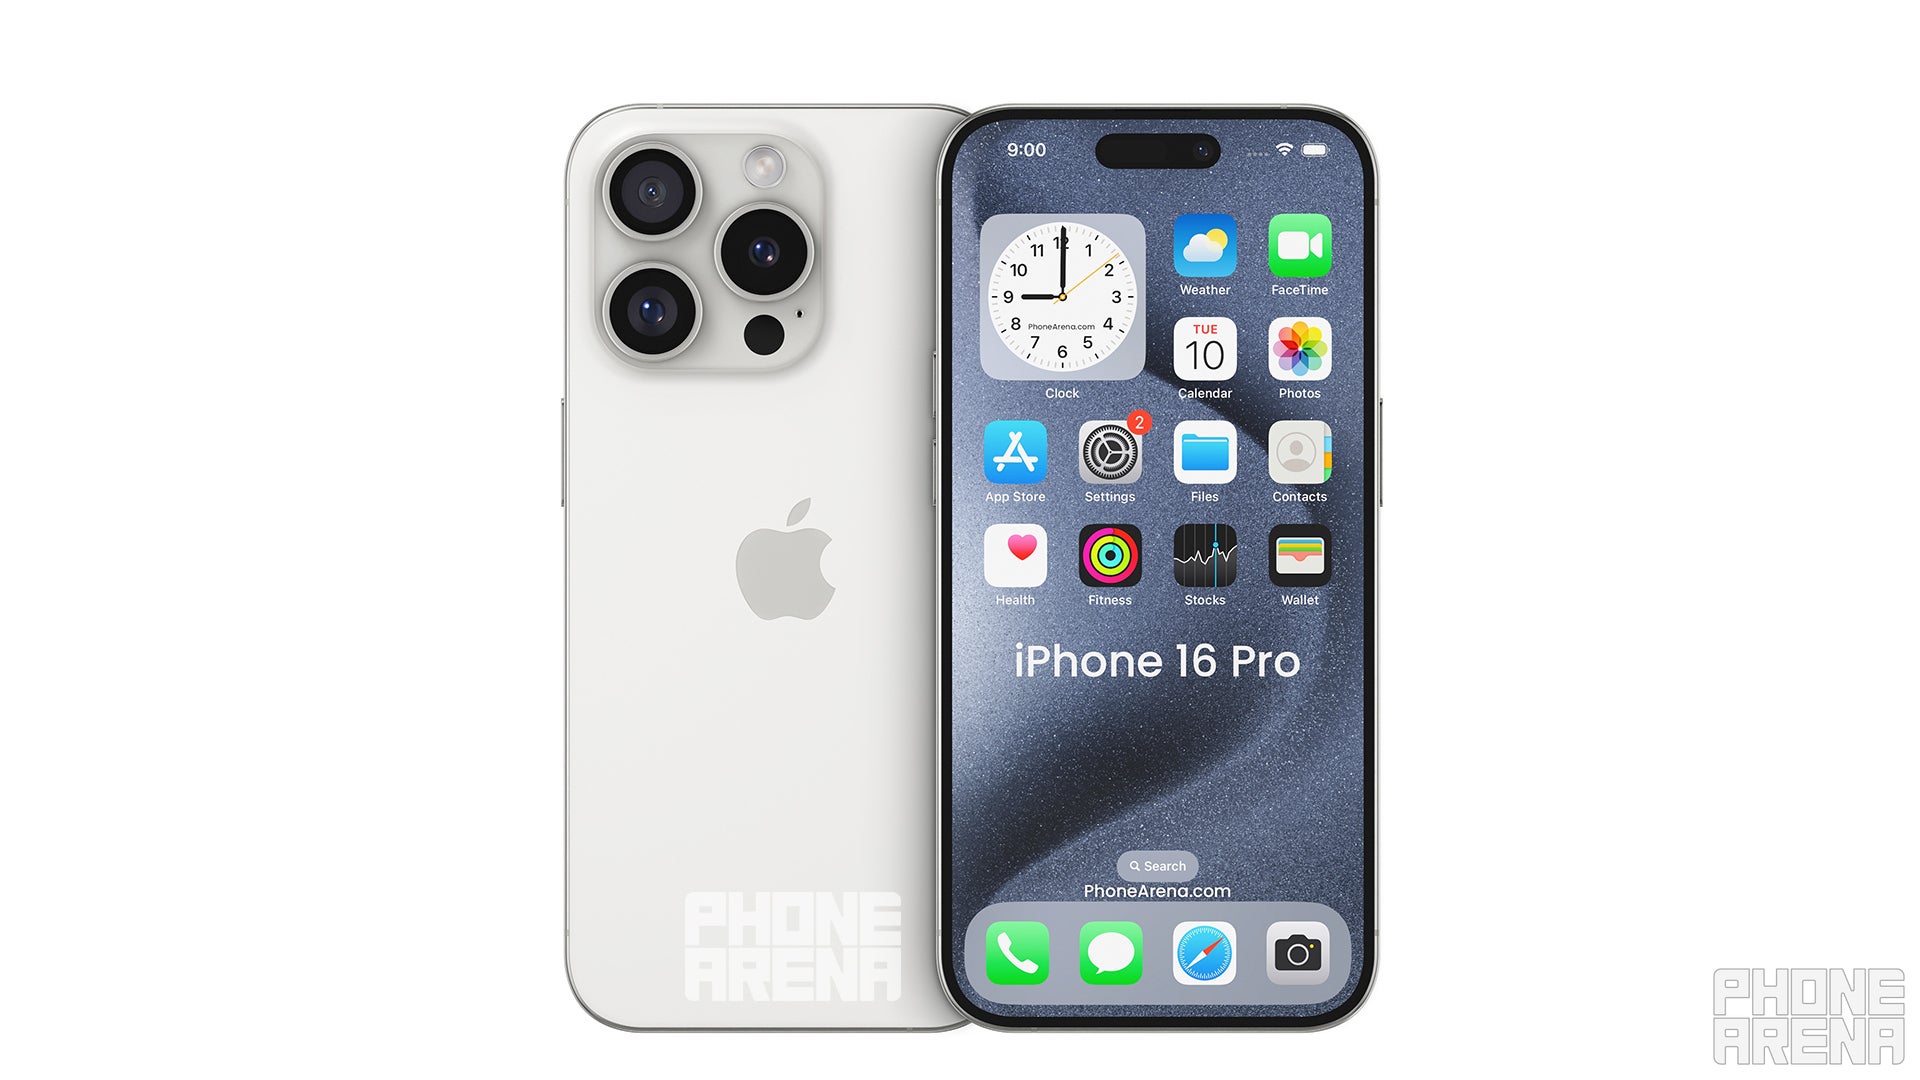 Resim kredisi - PhoneArena - Apple, iPhone 16 Pro ile çerçevesiz hayalini gerçekleştirebilir ama nasıl?